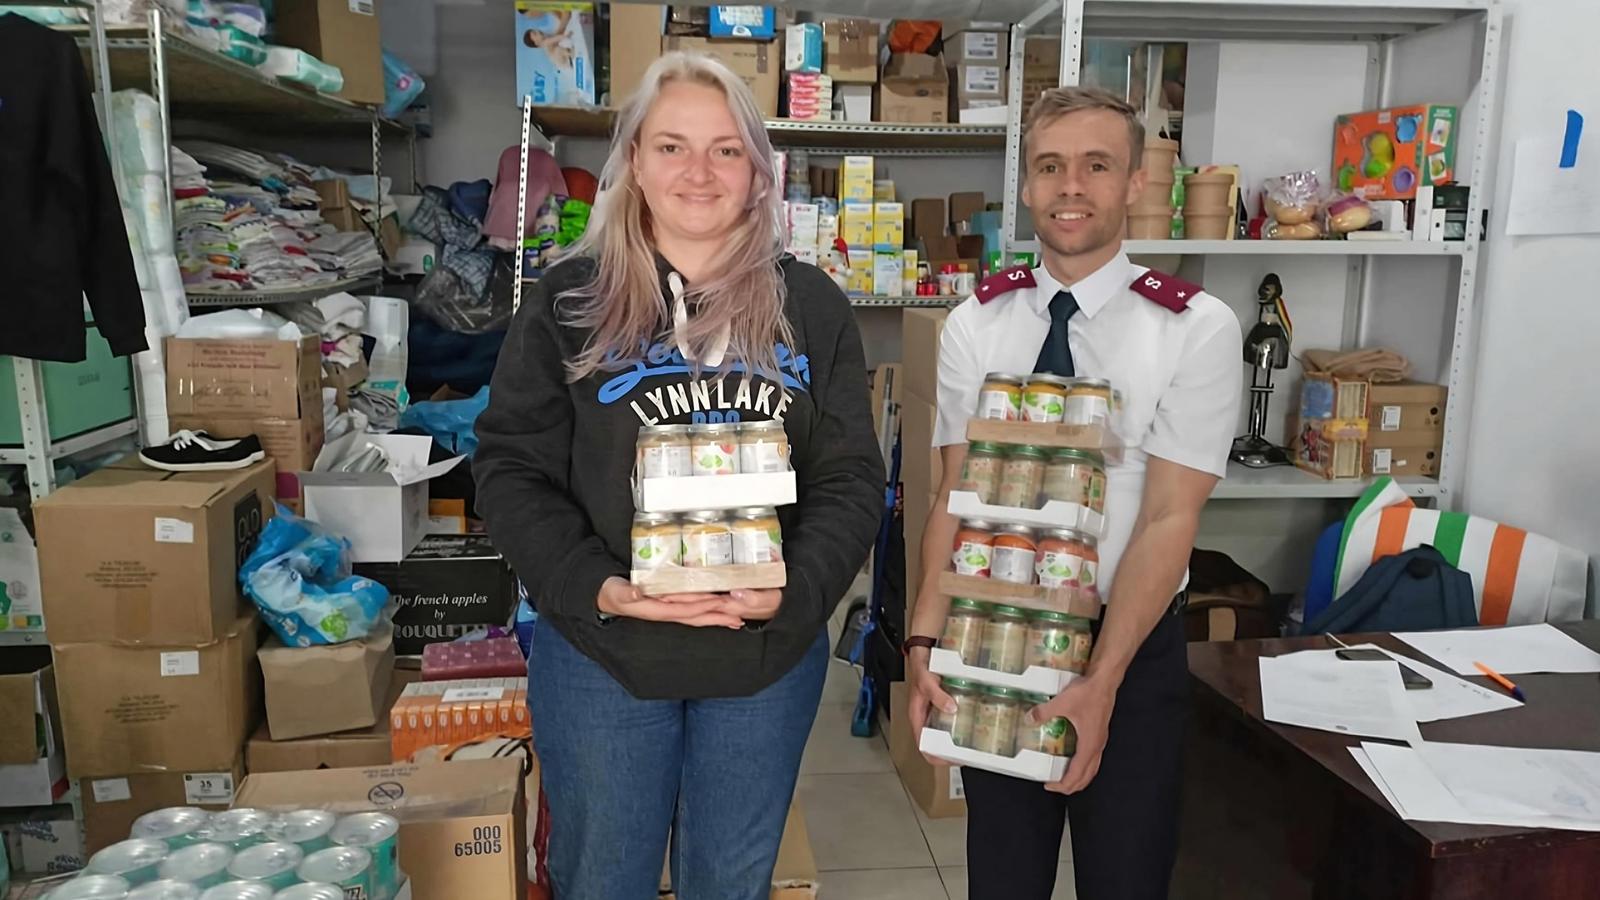 En kvinna och en man står och håller i matförpackningar - i bakgrunden syns ett förråd fullt med matvaror och kläder. Mannen är klädd i Frälsningsarméns uniform.